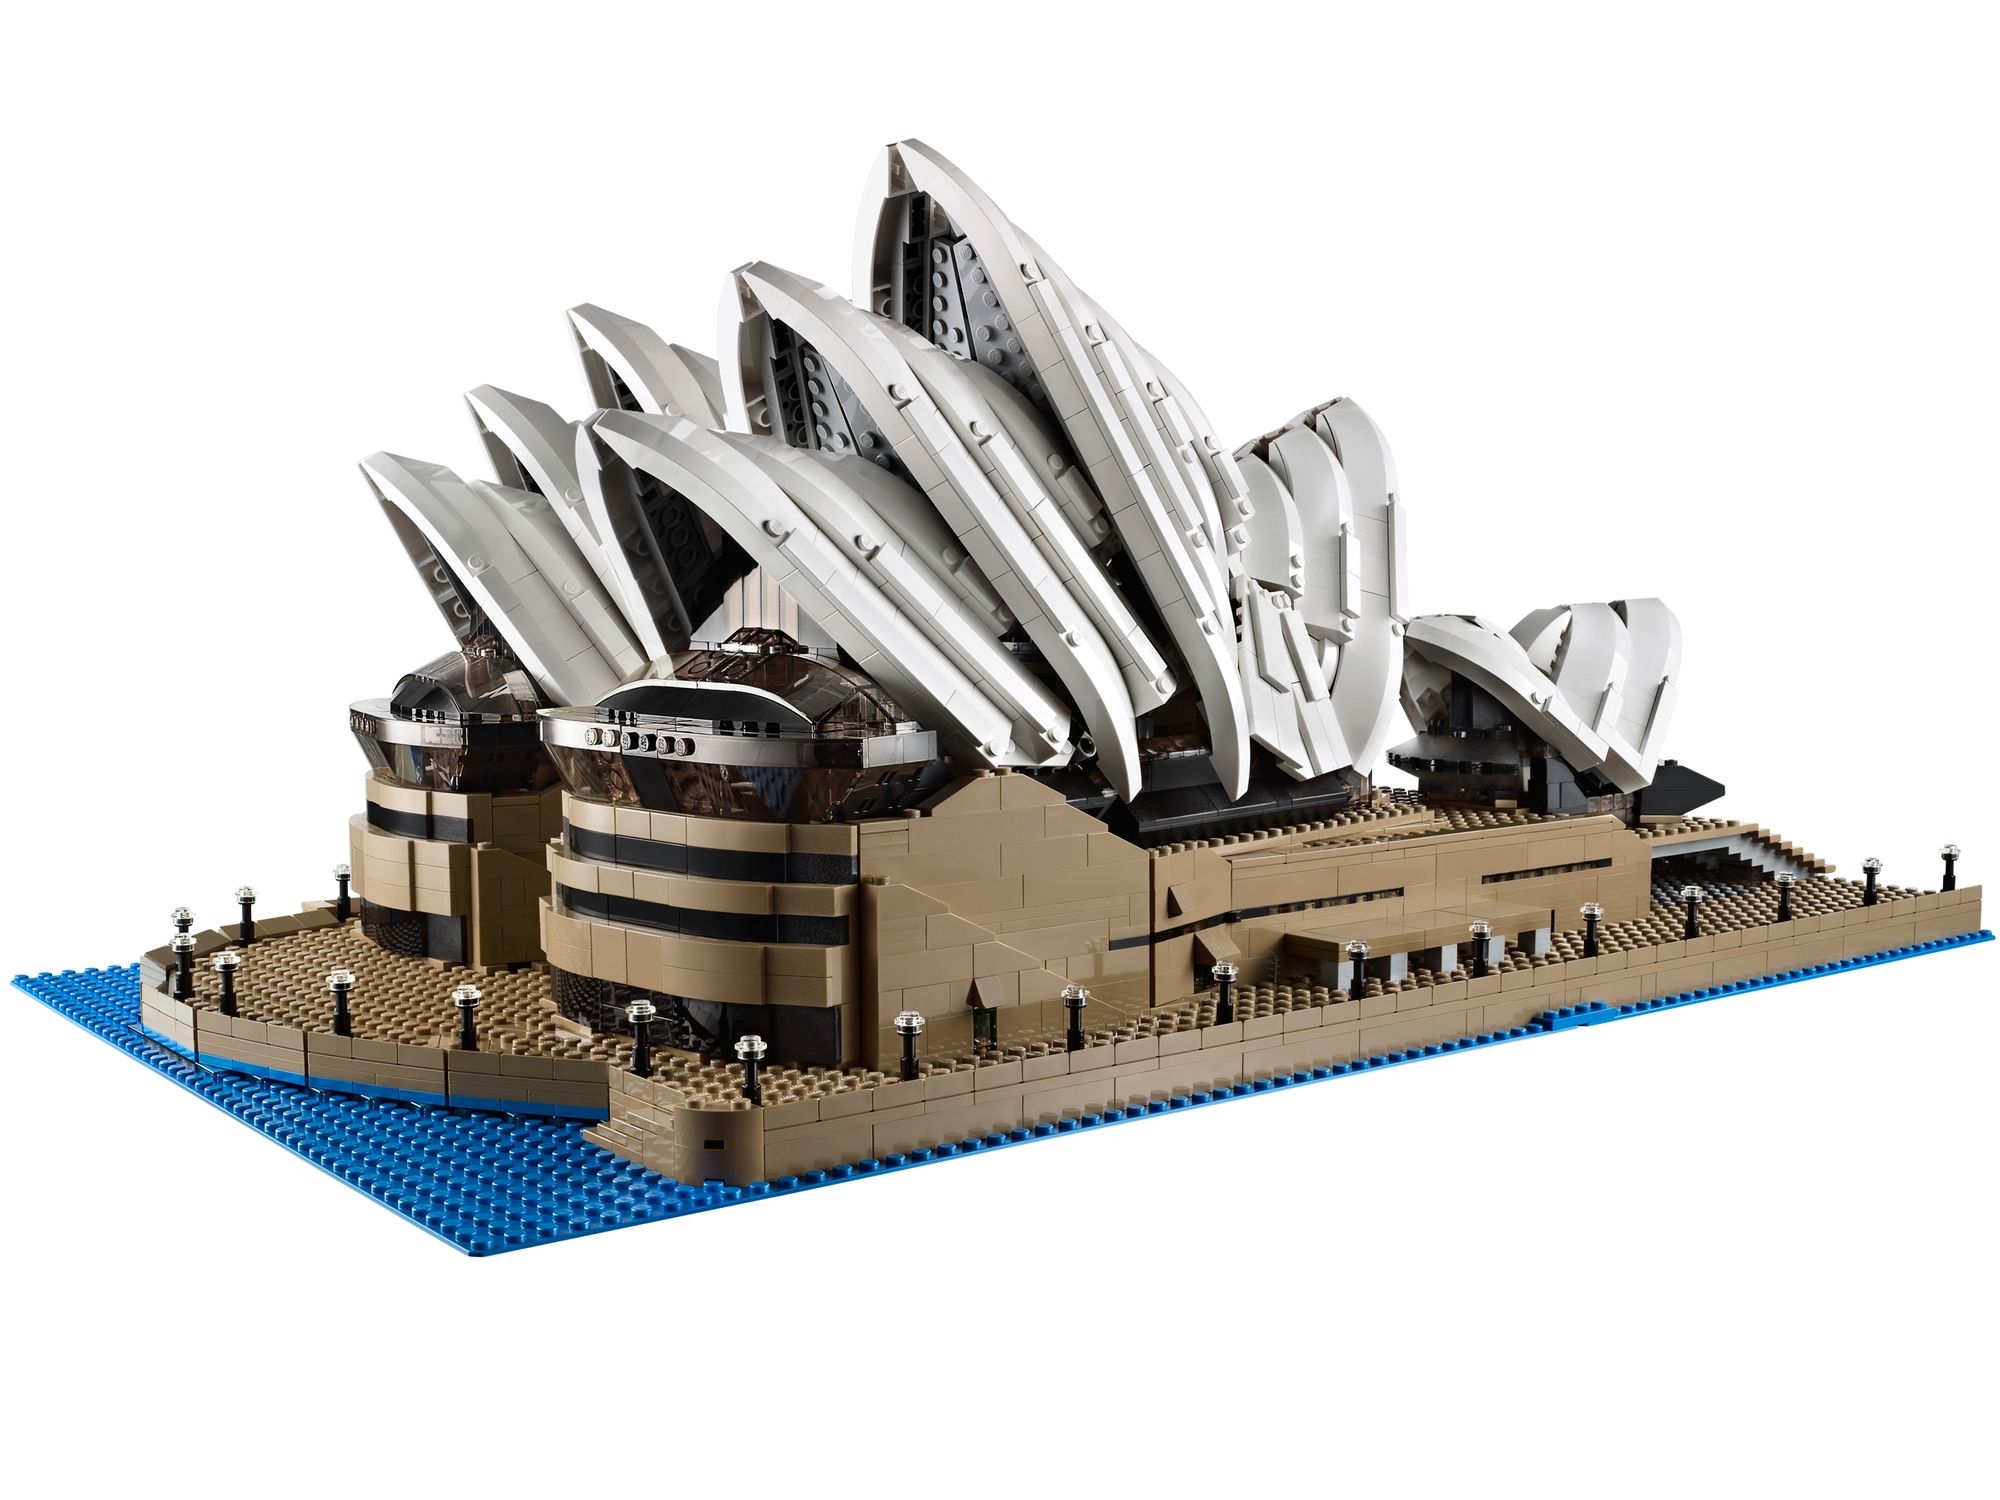 LEGO 10234 Sydney Opera House